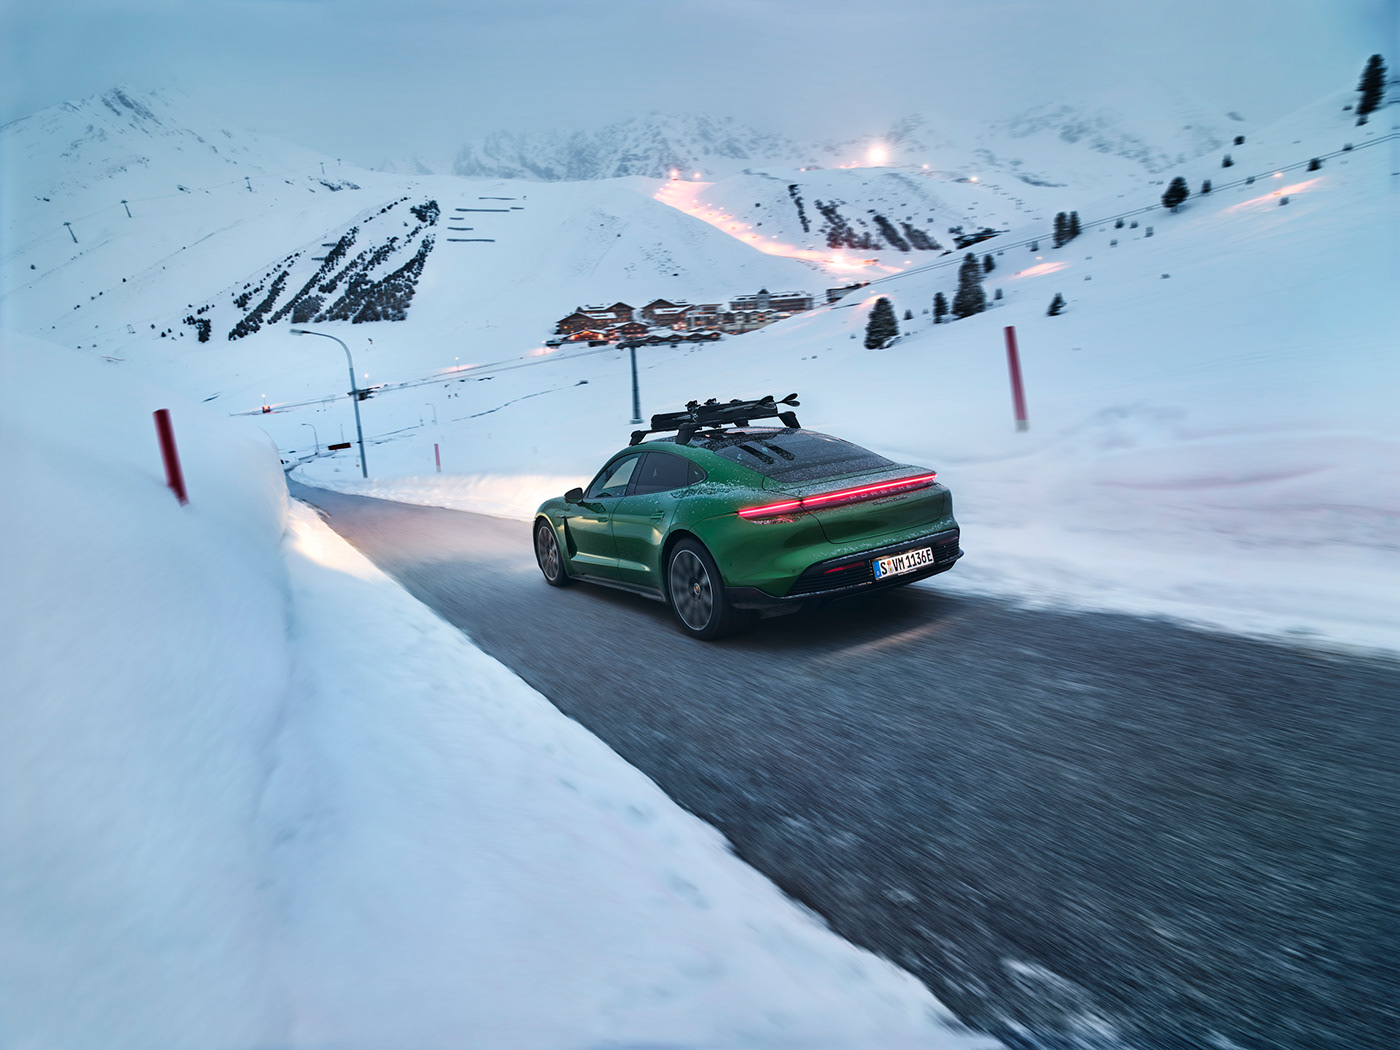 accessoires alps campaign commission equipment Landscape Porsche snow transportation video